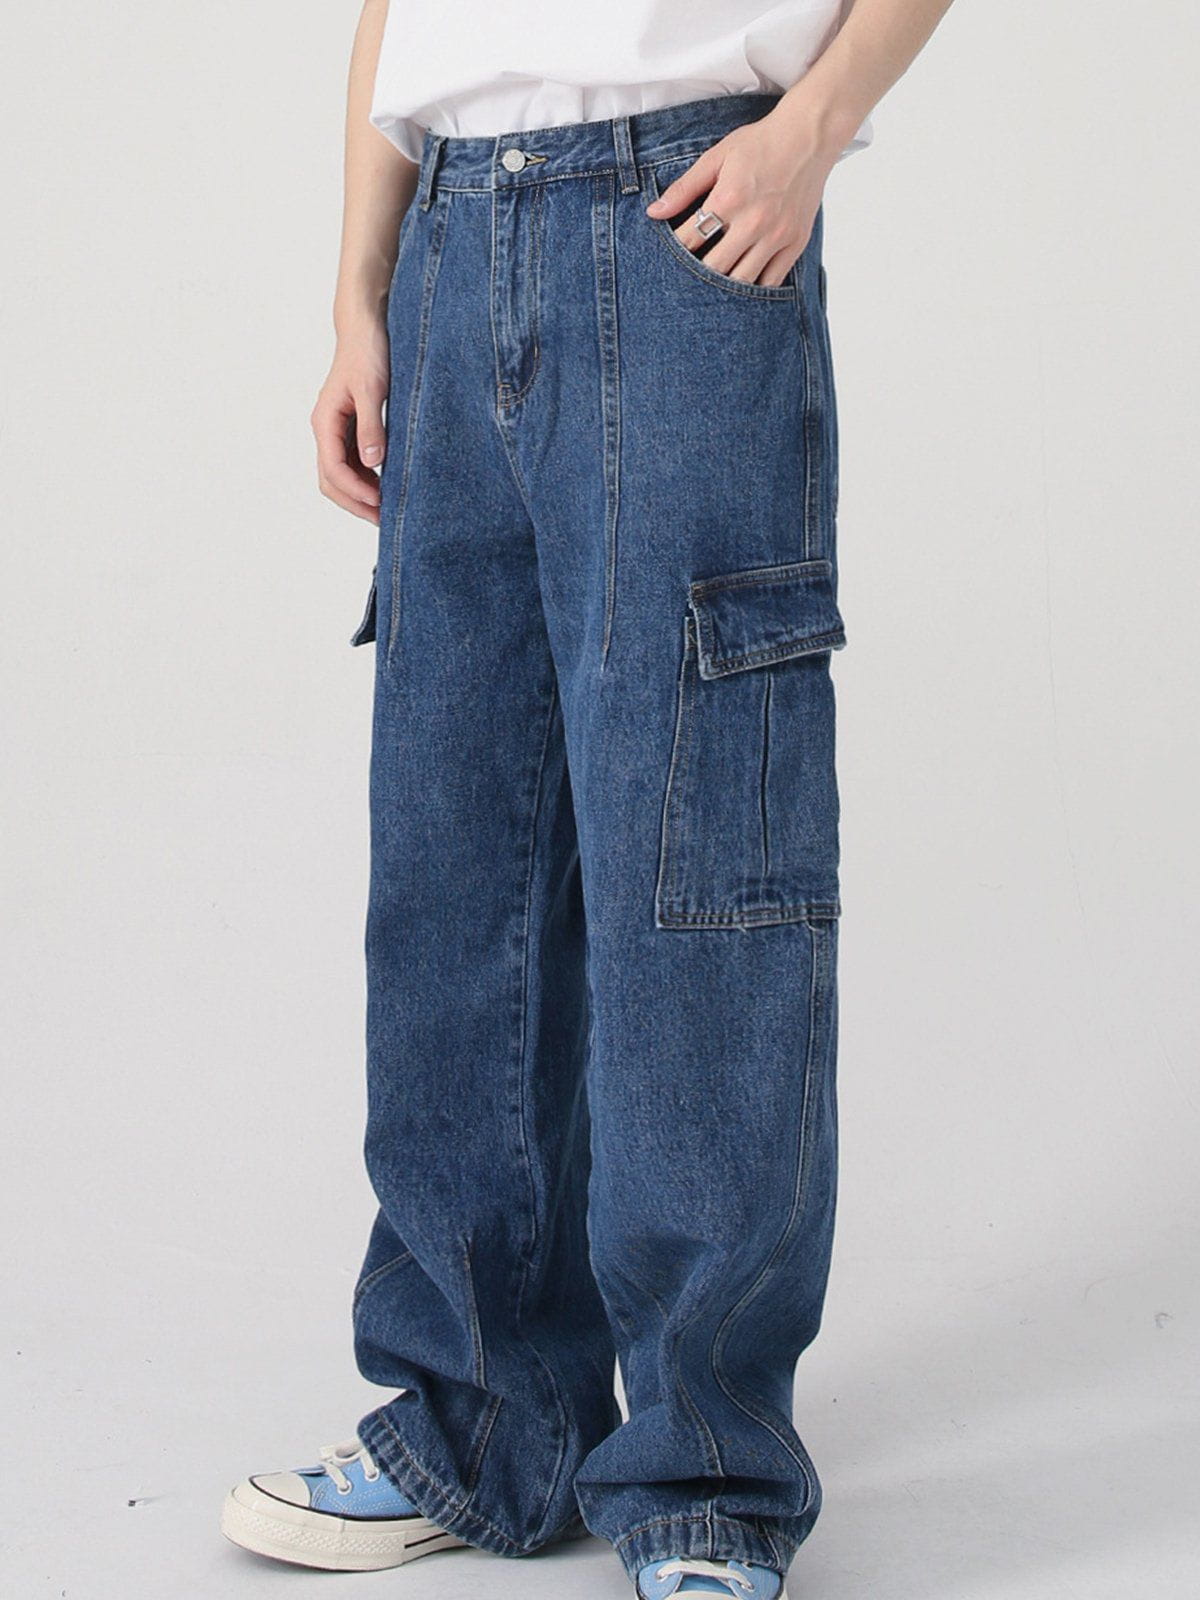 Eprezzy® - Large Pockets Jeans Streetwear Fashion - eprezzy.com